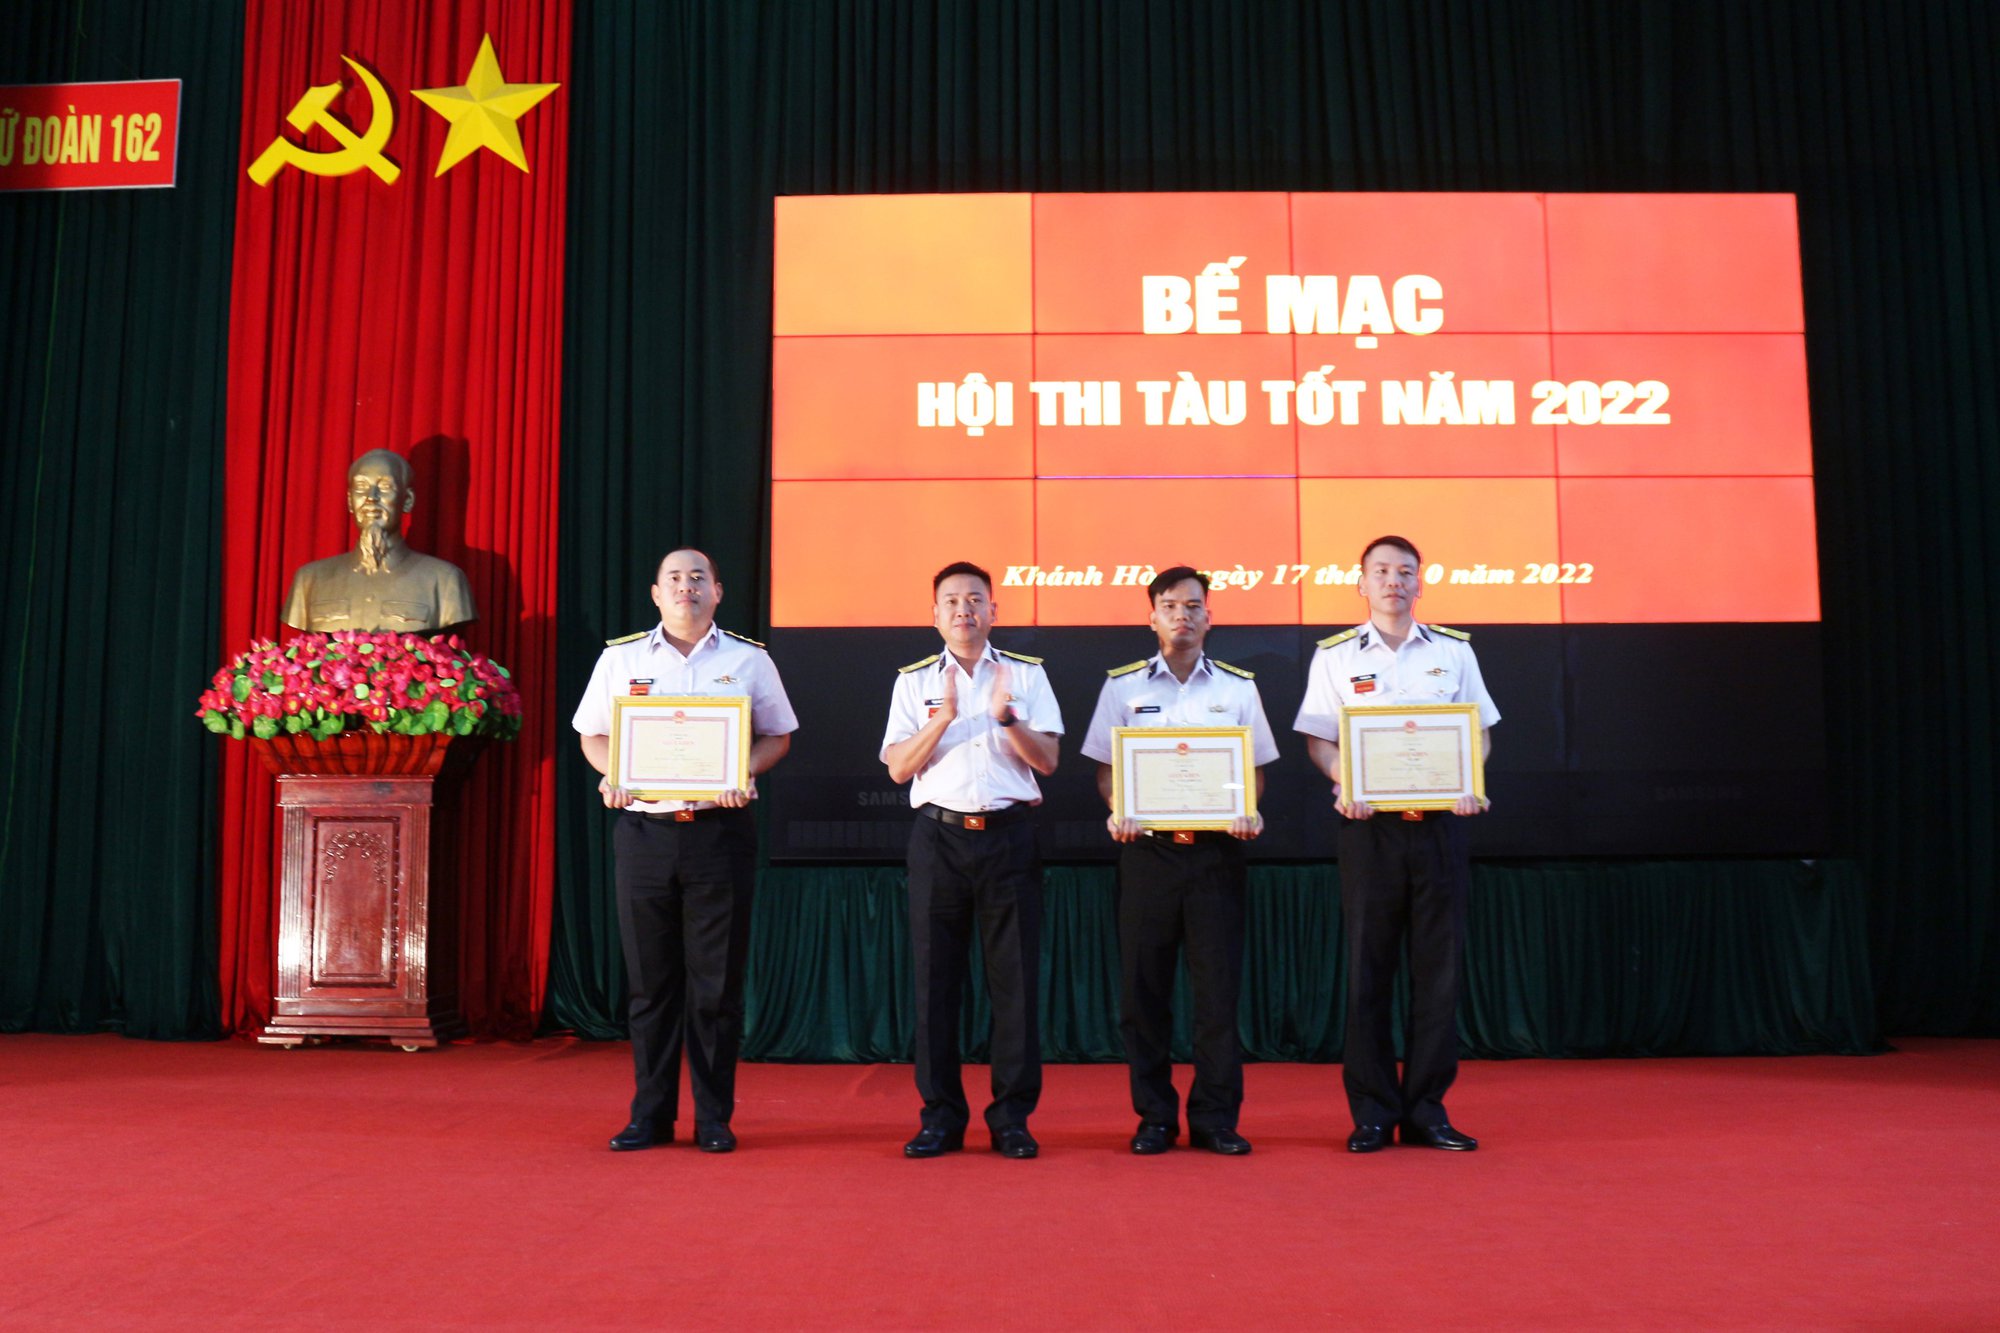 Khánh Hòa: Lữ đoàn 162 bế mạc hội thi tàu tốt năm 2022 - Ảnh 1.